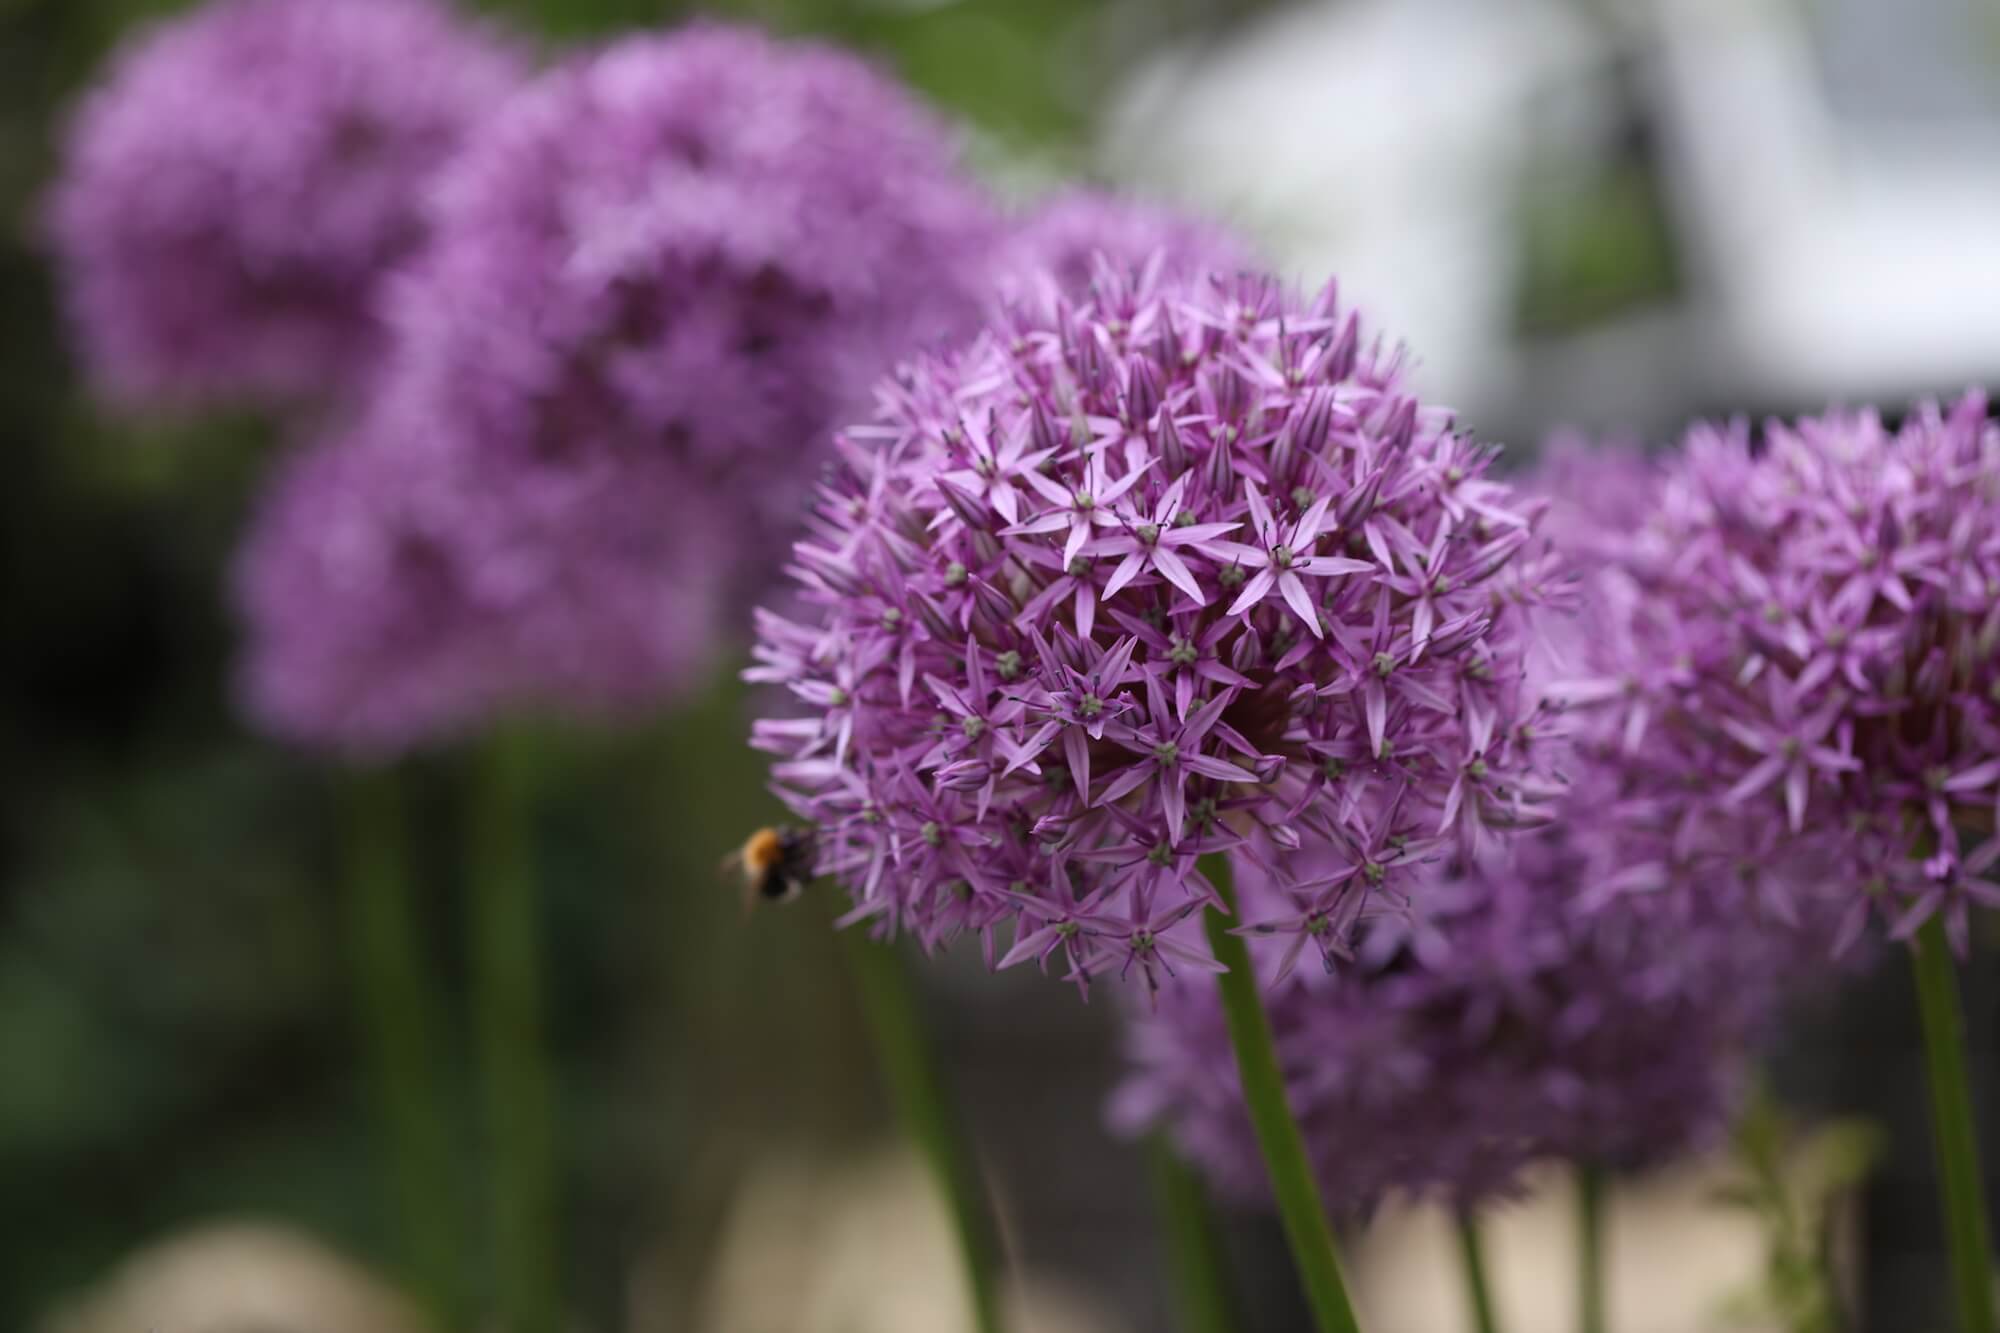 allium flowers look like purple balls